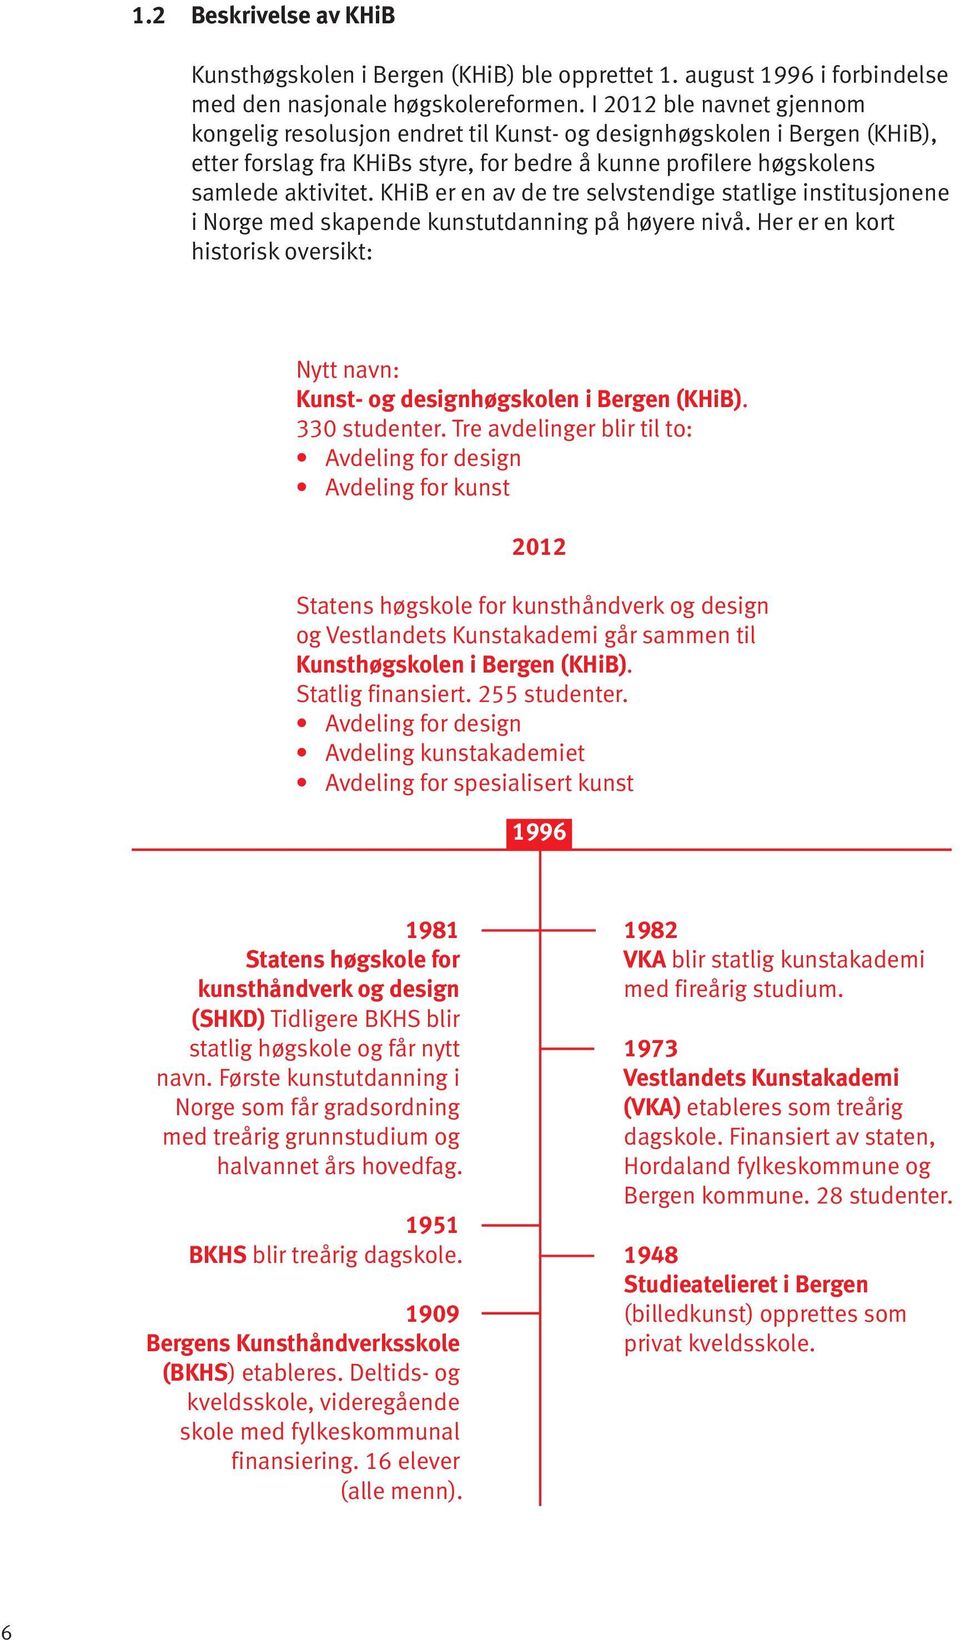 KHiB er en av de tre selvstendige statlige institusjonene i Norge med skapende kunstutdanning på høyere nivå. Her er en kort historisk oversikt: Nytt navn: Kunst- og designhøgskolen i Bergen (KHiB).